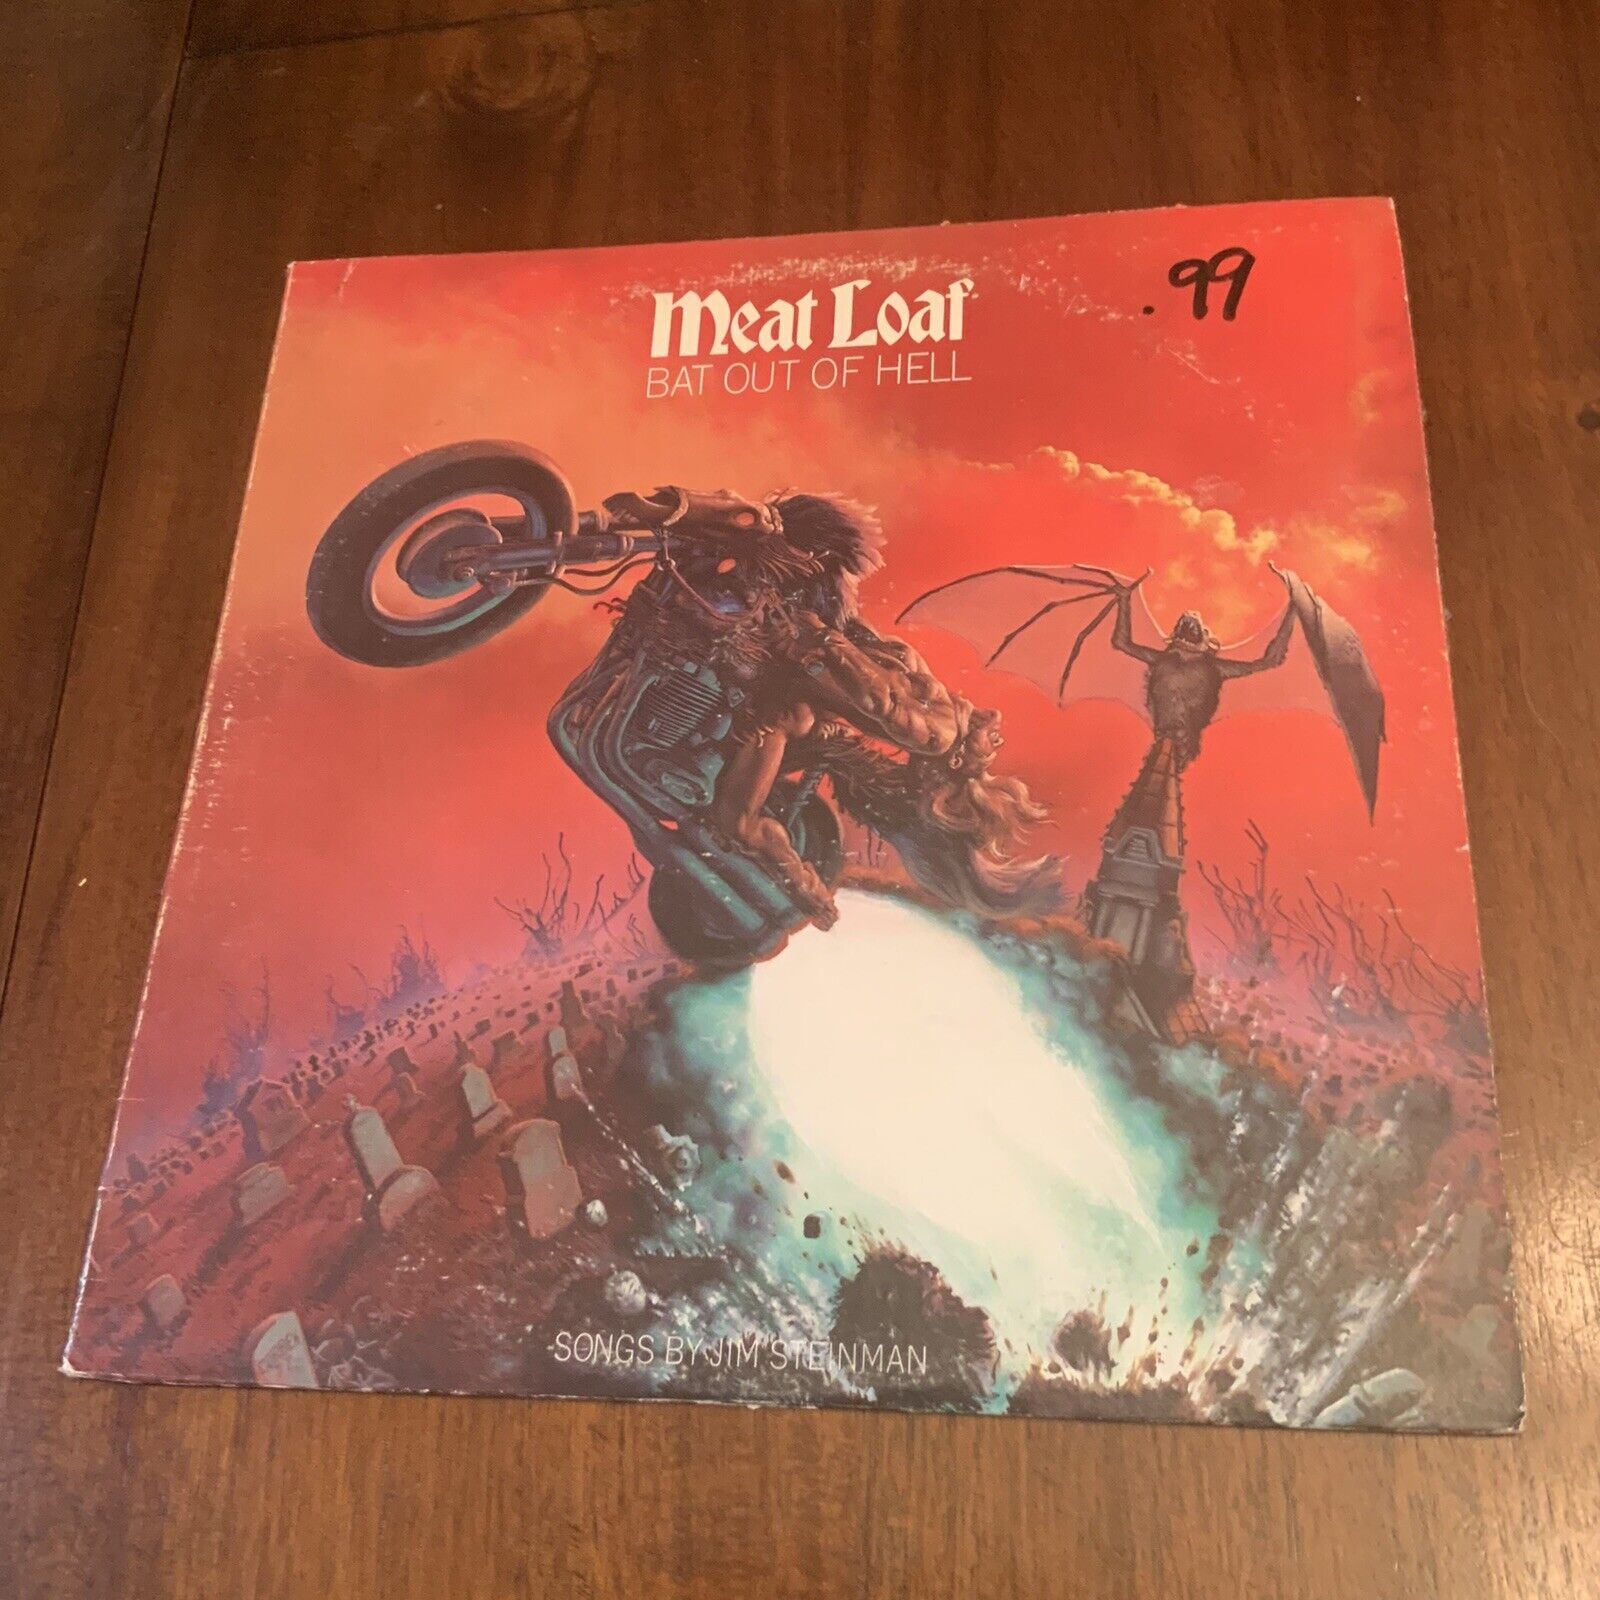 Vintage Old 1977 Original MEAT LOAF - BAT OUT OF HELL Vinyl Record LP